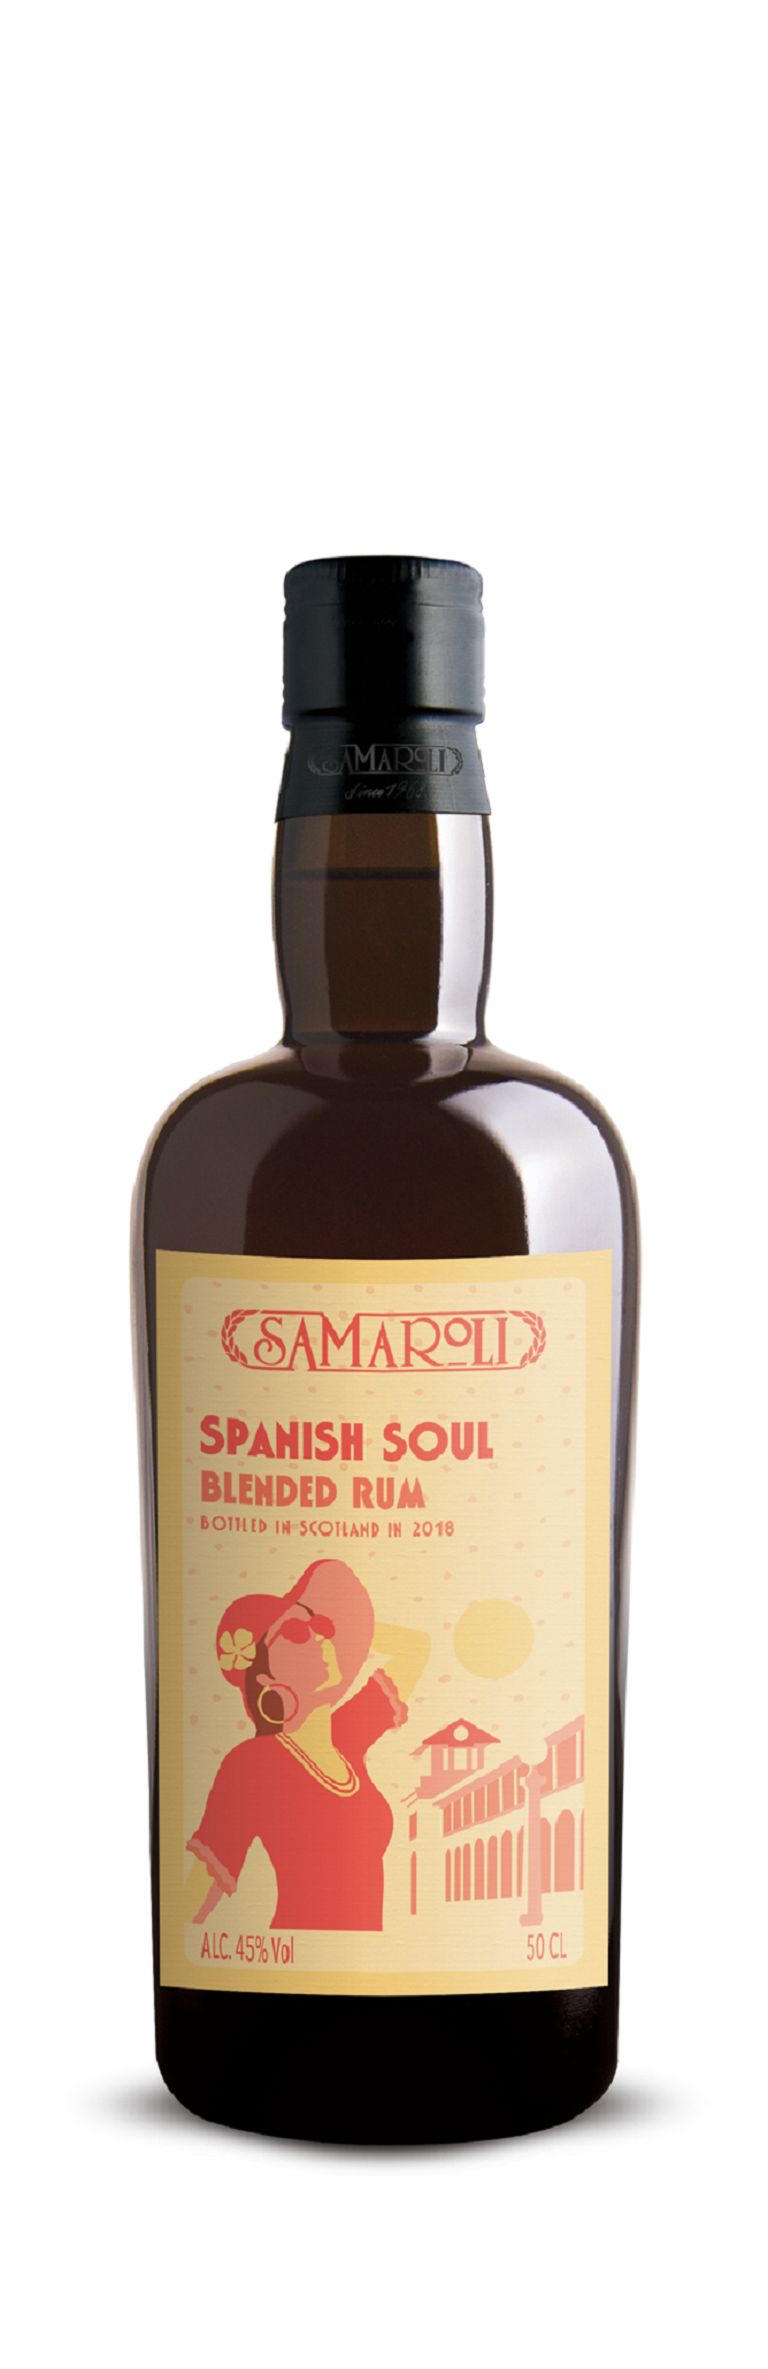 Spanish Soul - Blended Rum - ed. 2018 - 50 cl